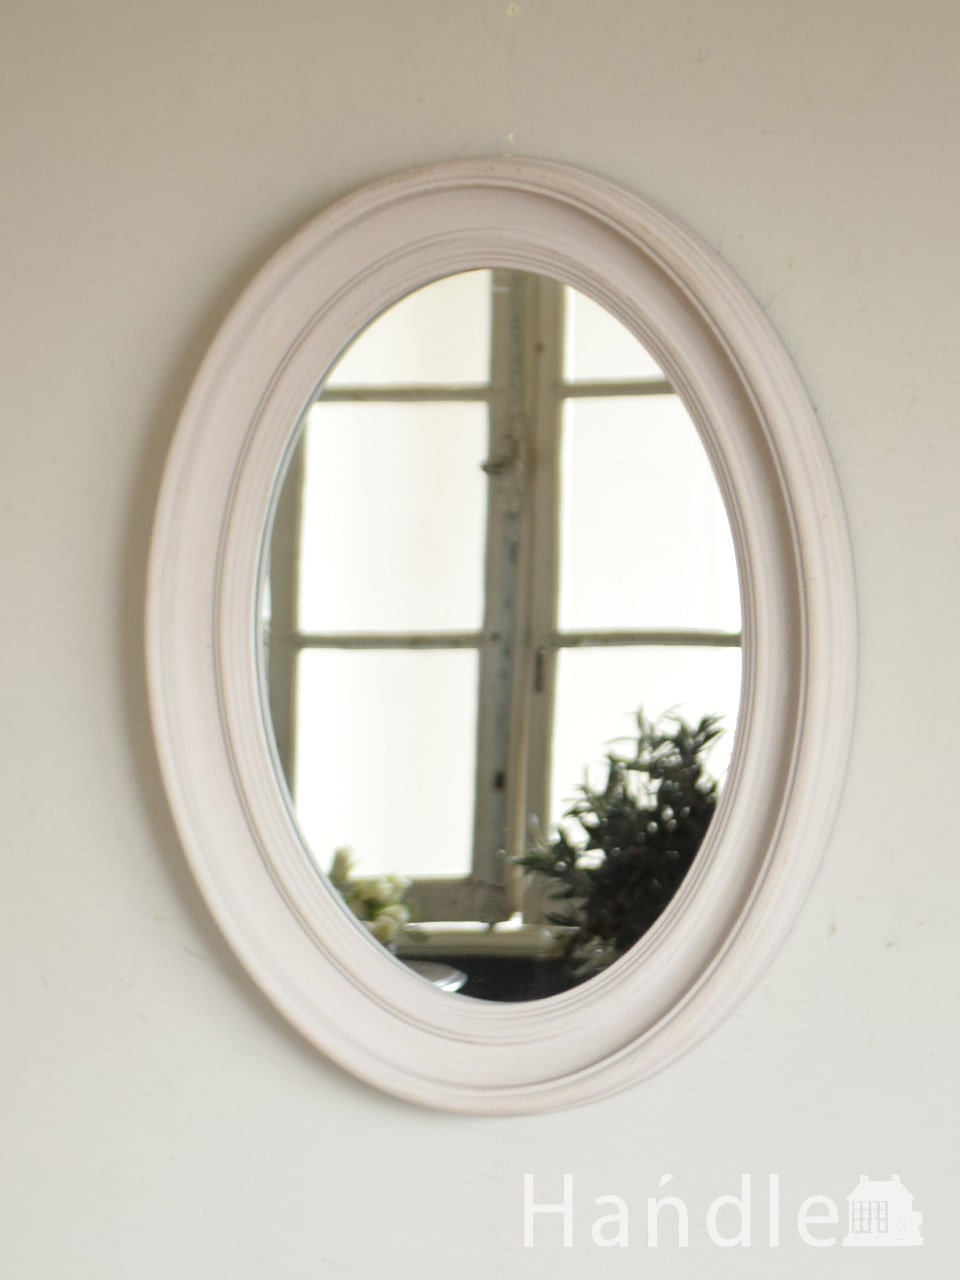 アンティーク調のおしゃれな鏡、オーバルの形をしたウォールミラー